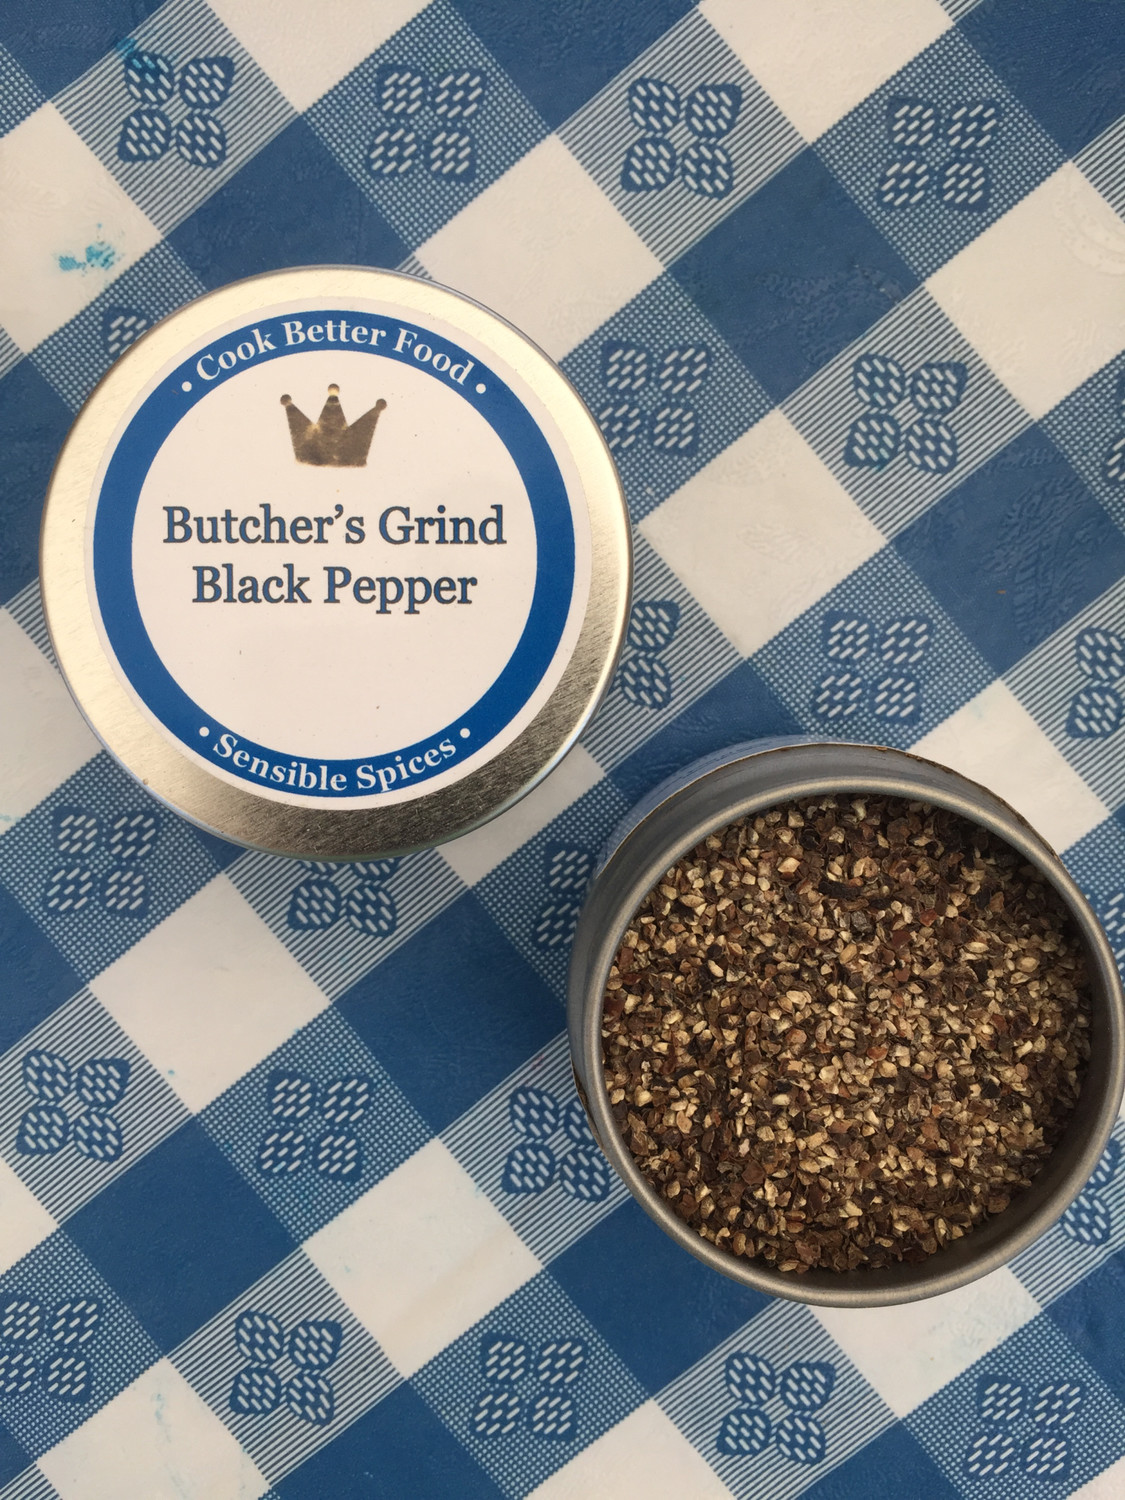 Butcher's Grind Black Pepper